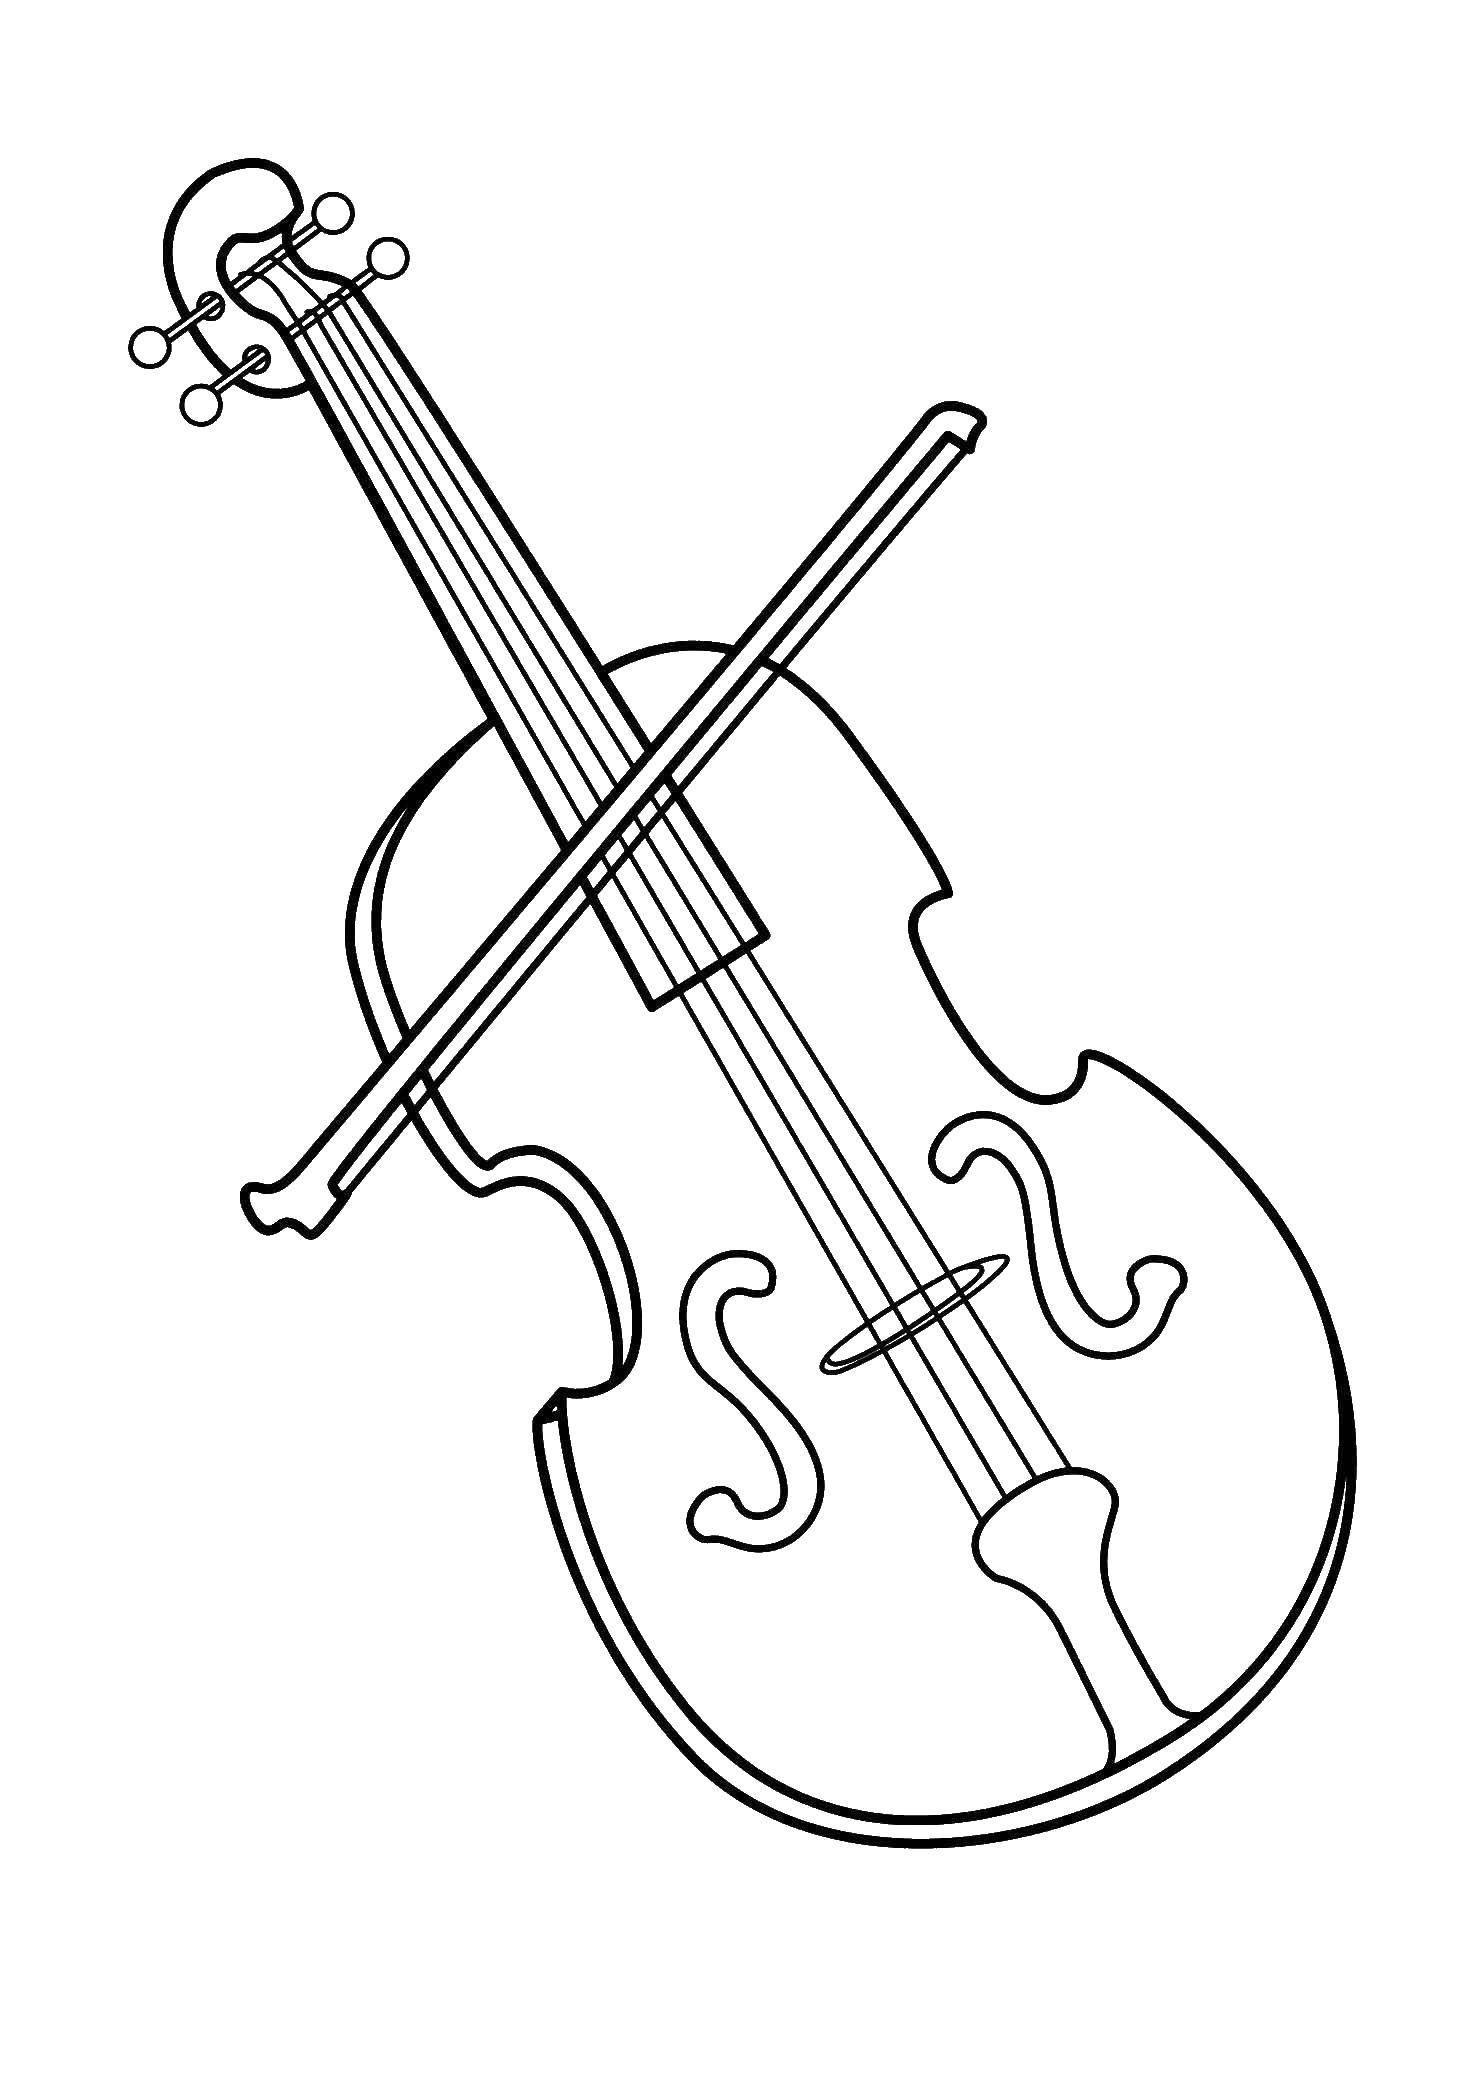 Название: Раскраска Виолончель. Категория: Музыкальный инструмент. Теги: виолончель, музыкальные инструменты.